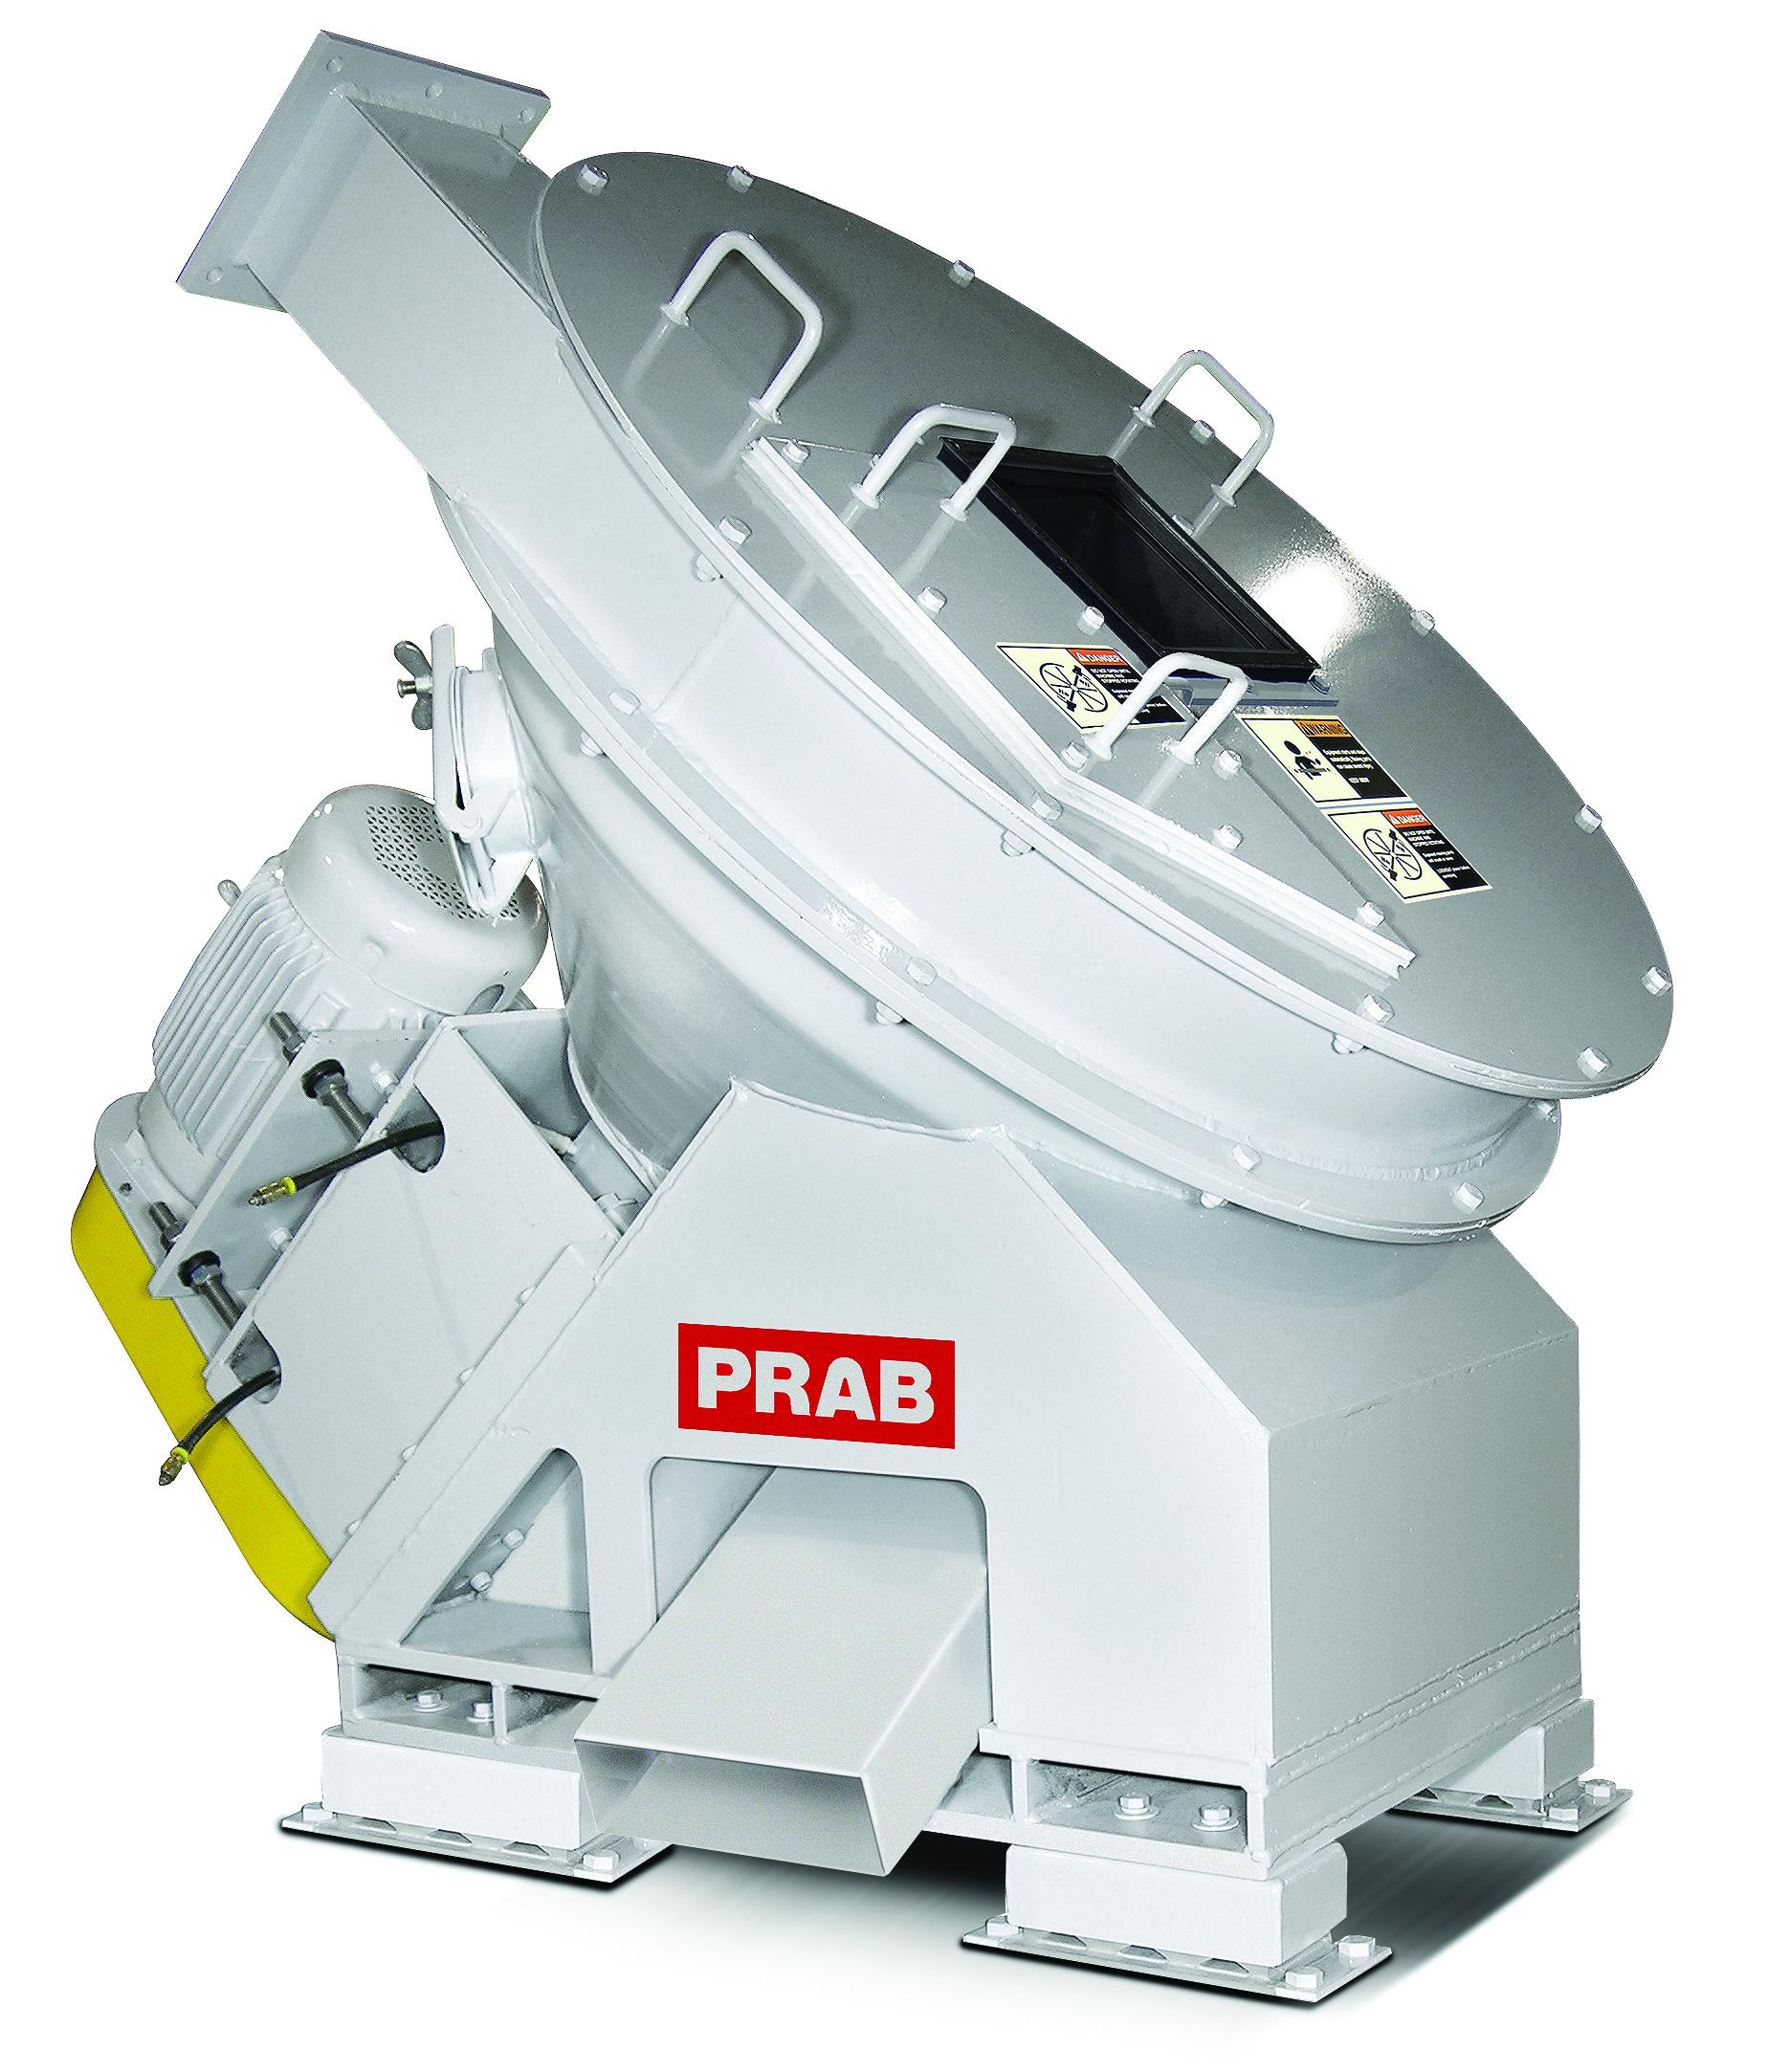 PRAB介绍了它的斜轴离心机